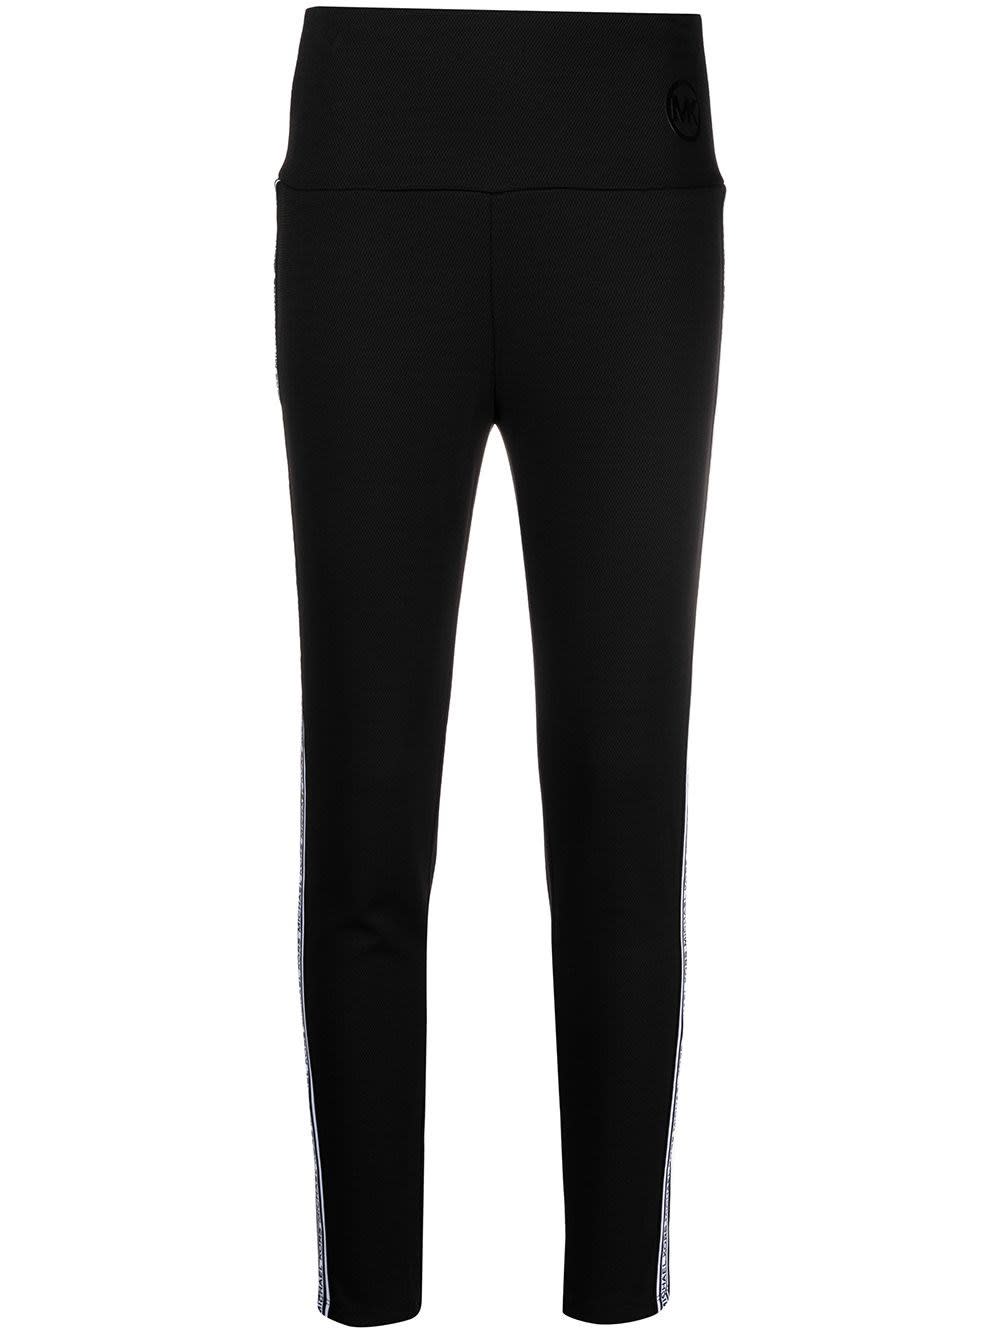 Michael Kors Black Pants With Side Logo Band